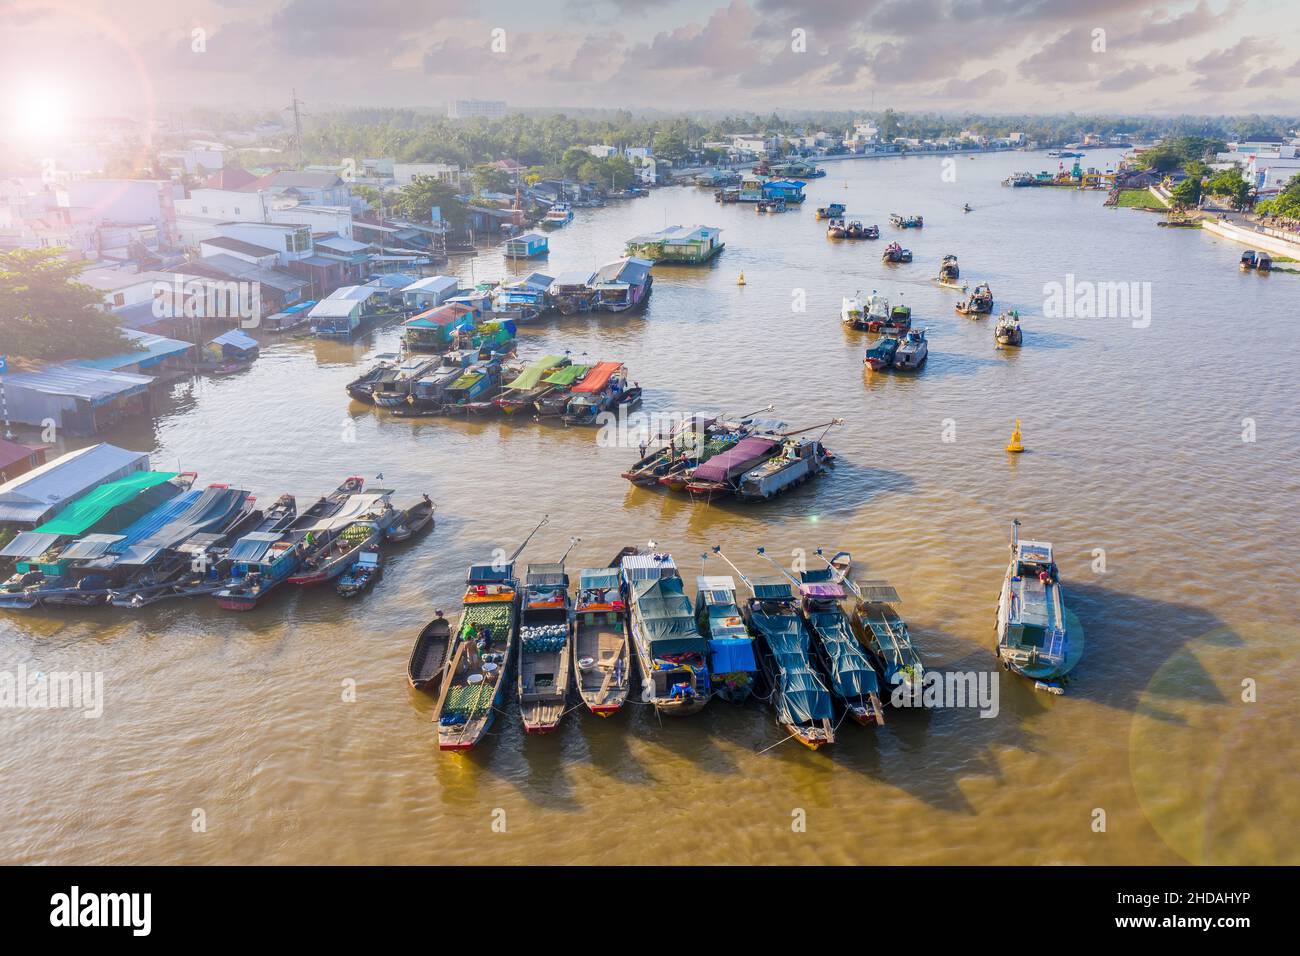 Il mercato galleggiante Cai Rang è vuoto di turisti e venditori e acquirenti sono ridotti in modo significativo durante la pandemia del covid-19 Foto Stock